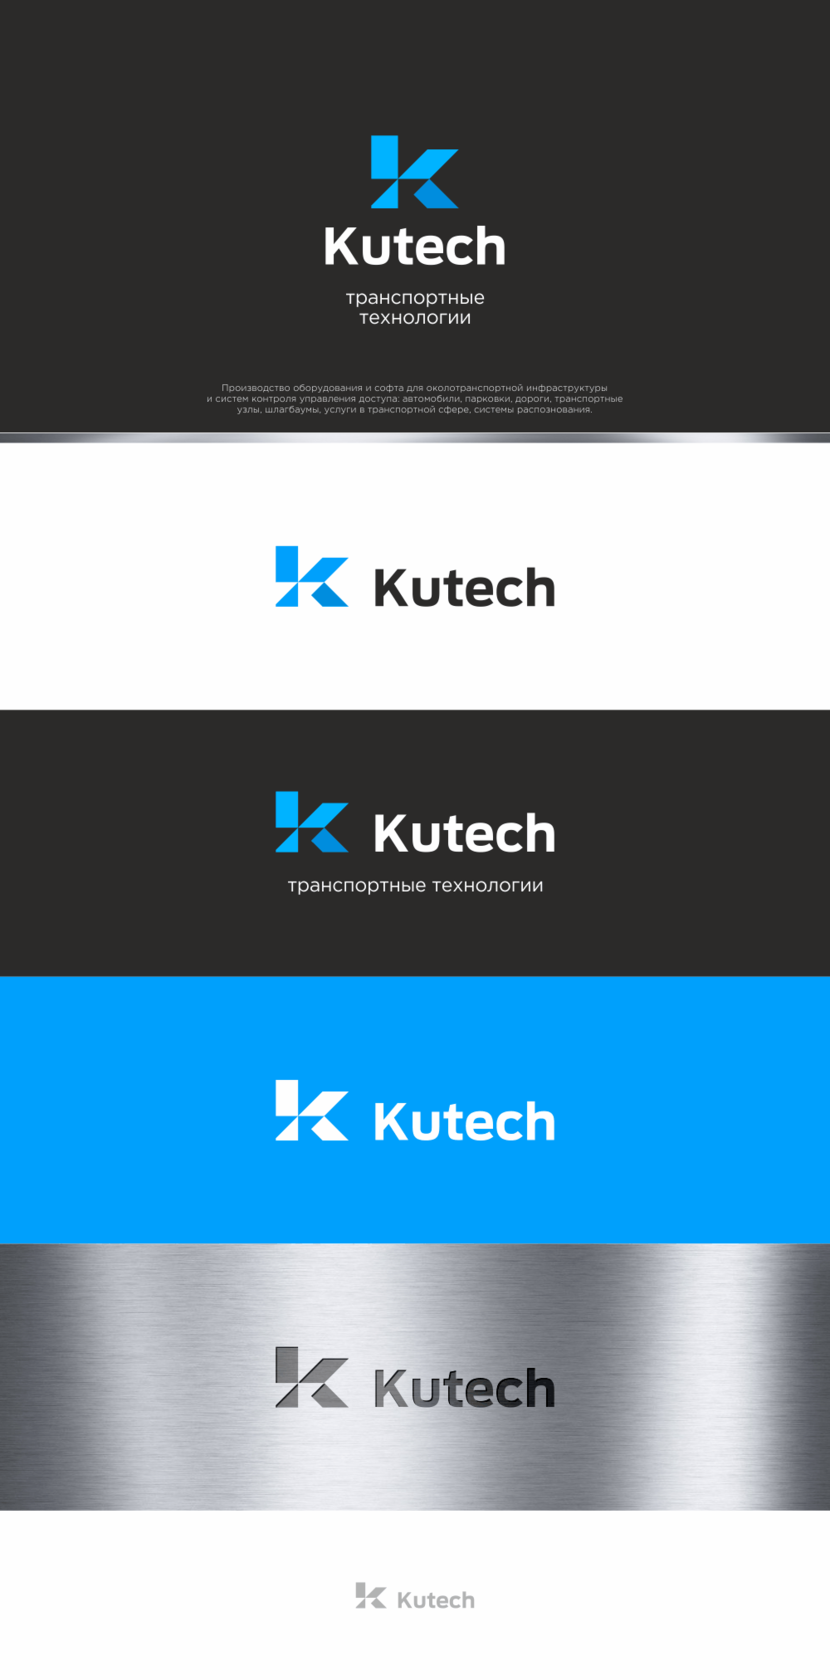 Kutech - транспортные технологии - Разработка логотипа